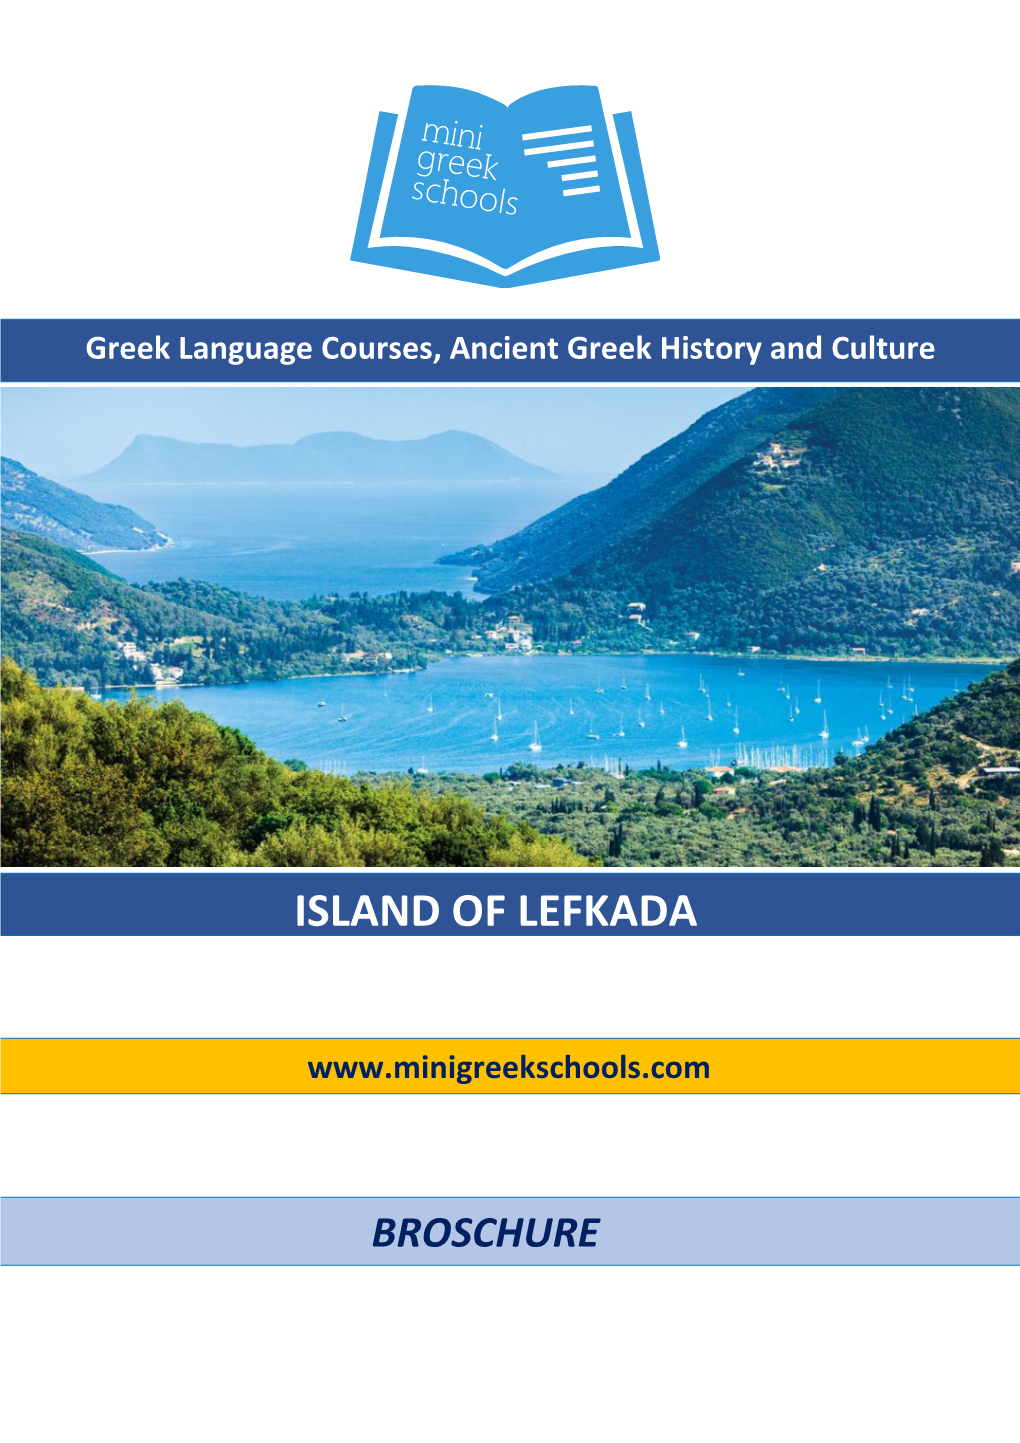 Island of Lefkada